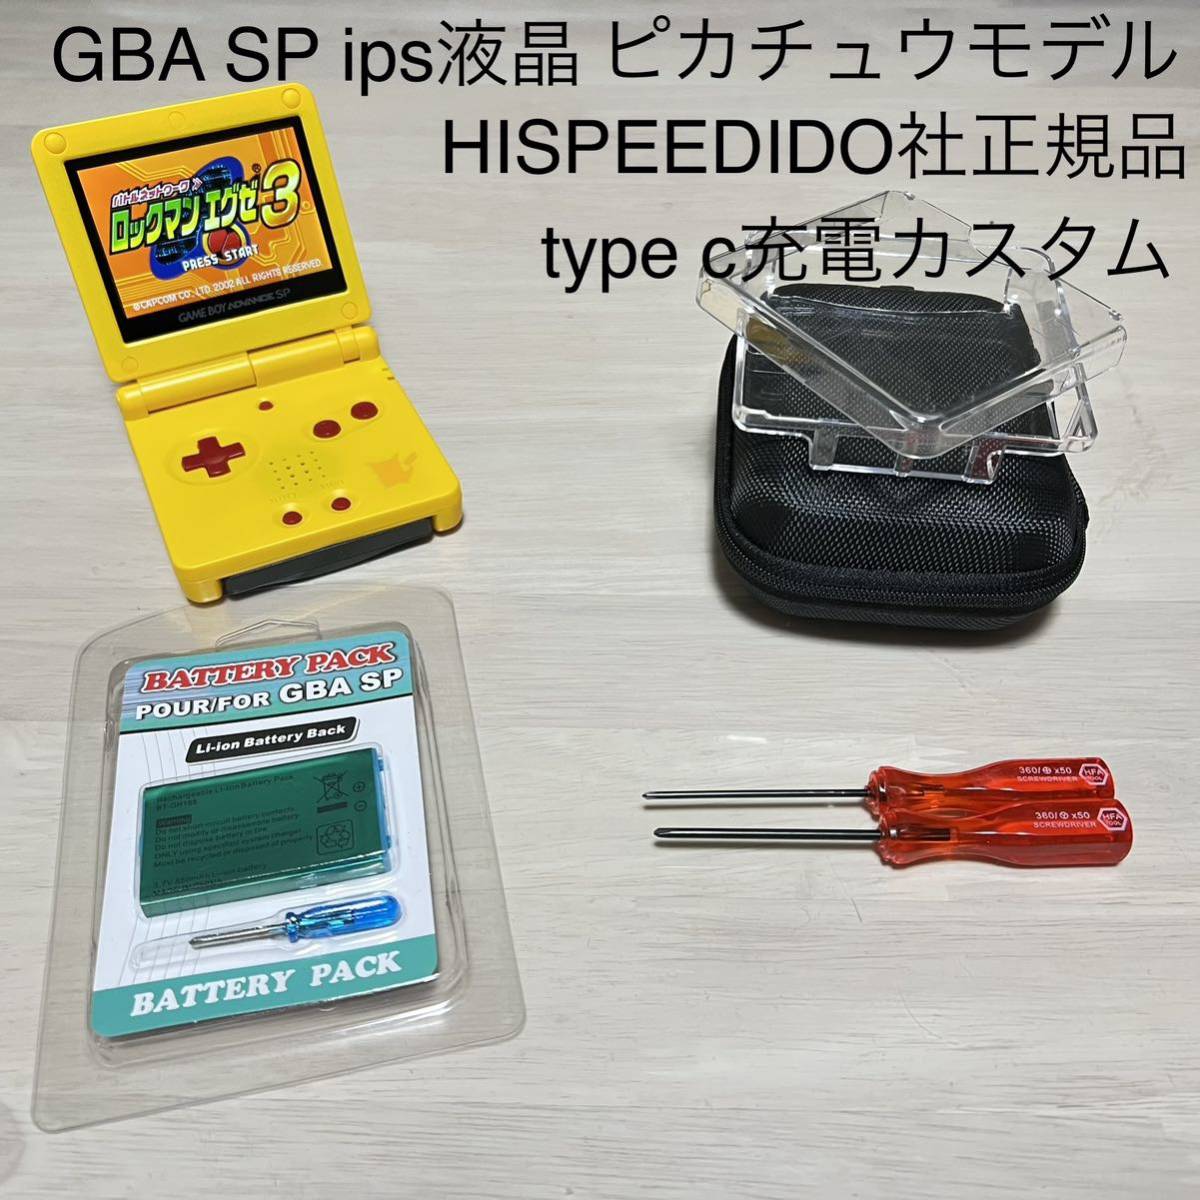 GBA SP ゲームボーイアドバンスSP IPS液晶 ピカチュウモデル-